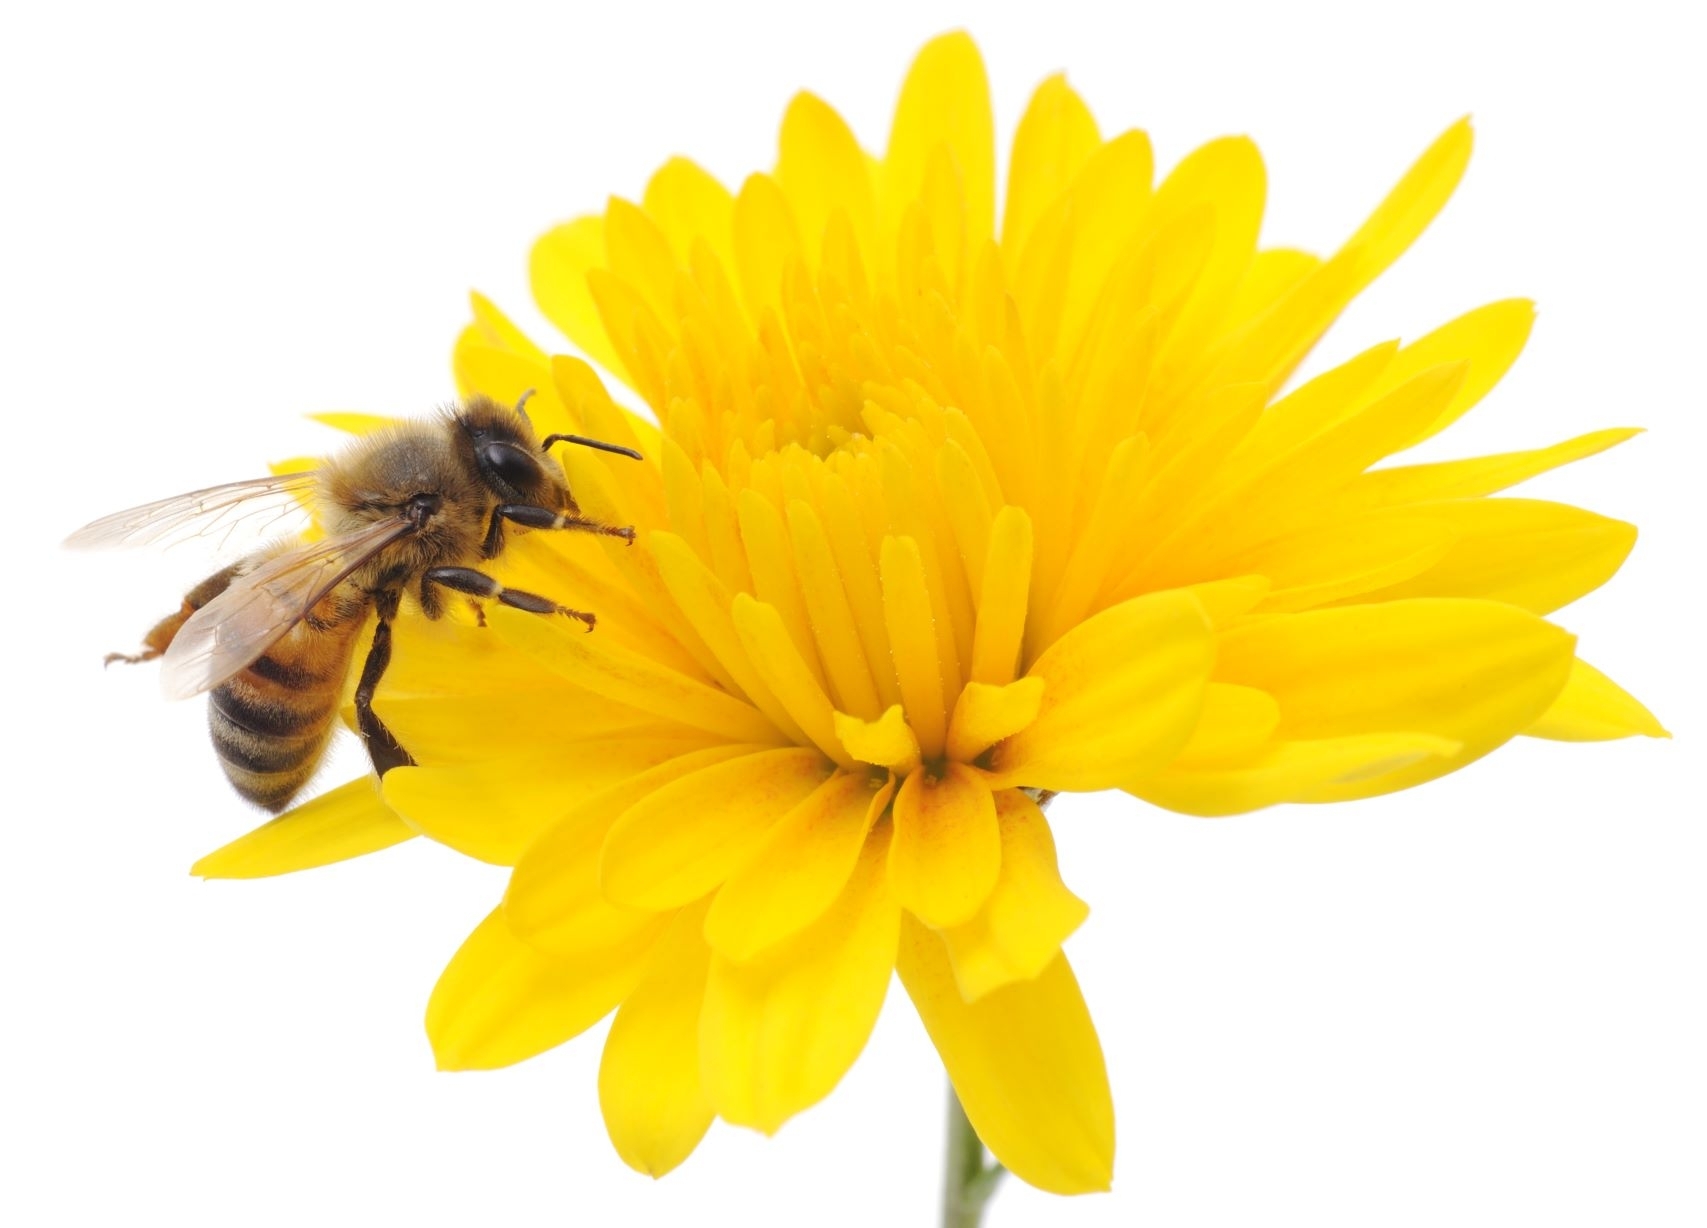 Augalininkystės tarnyba: vis dažniau pranešama apie žuvusias bites